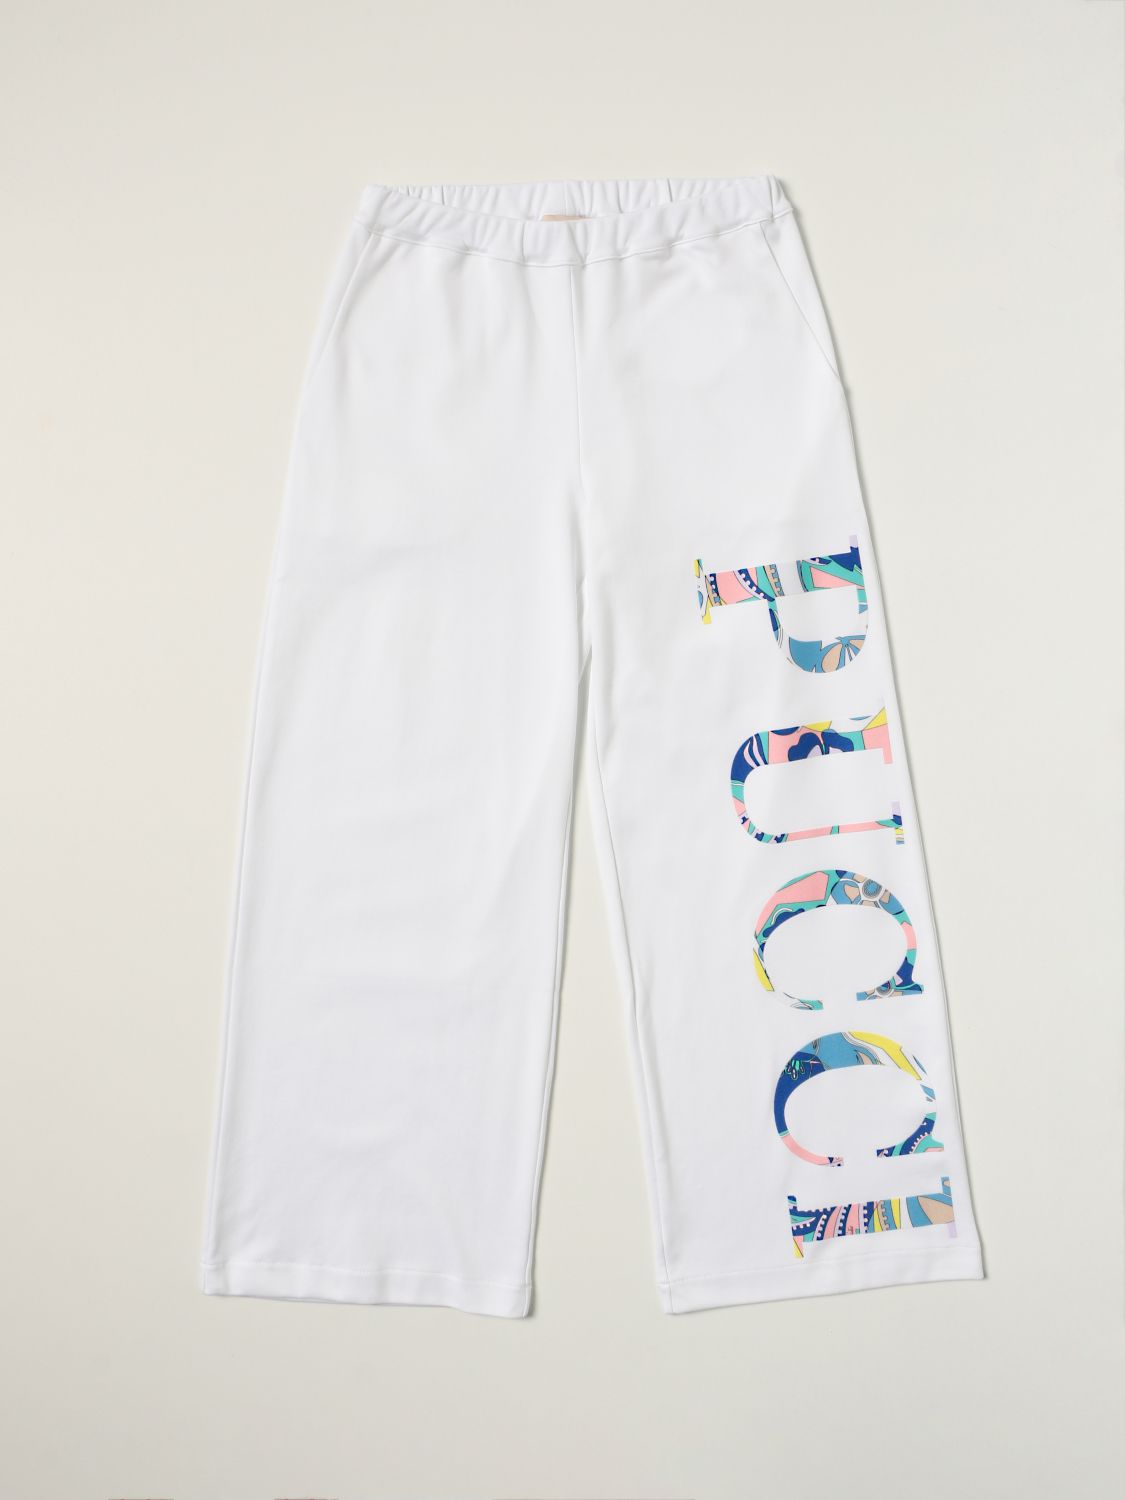 EMILIO PUCCI: jogging pants with big logo - White | Emilio Pucci pants  9P6081 J0013 online on 